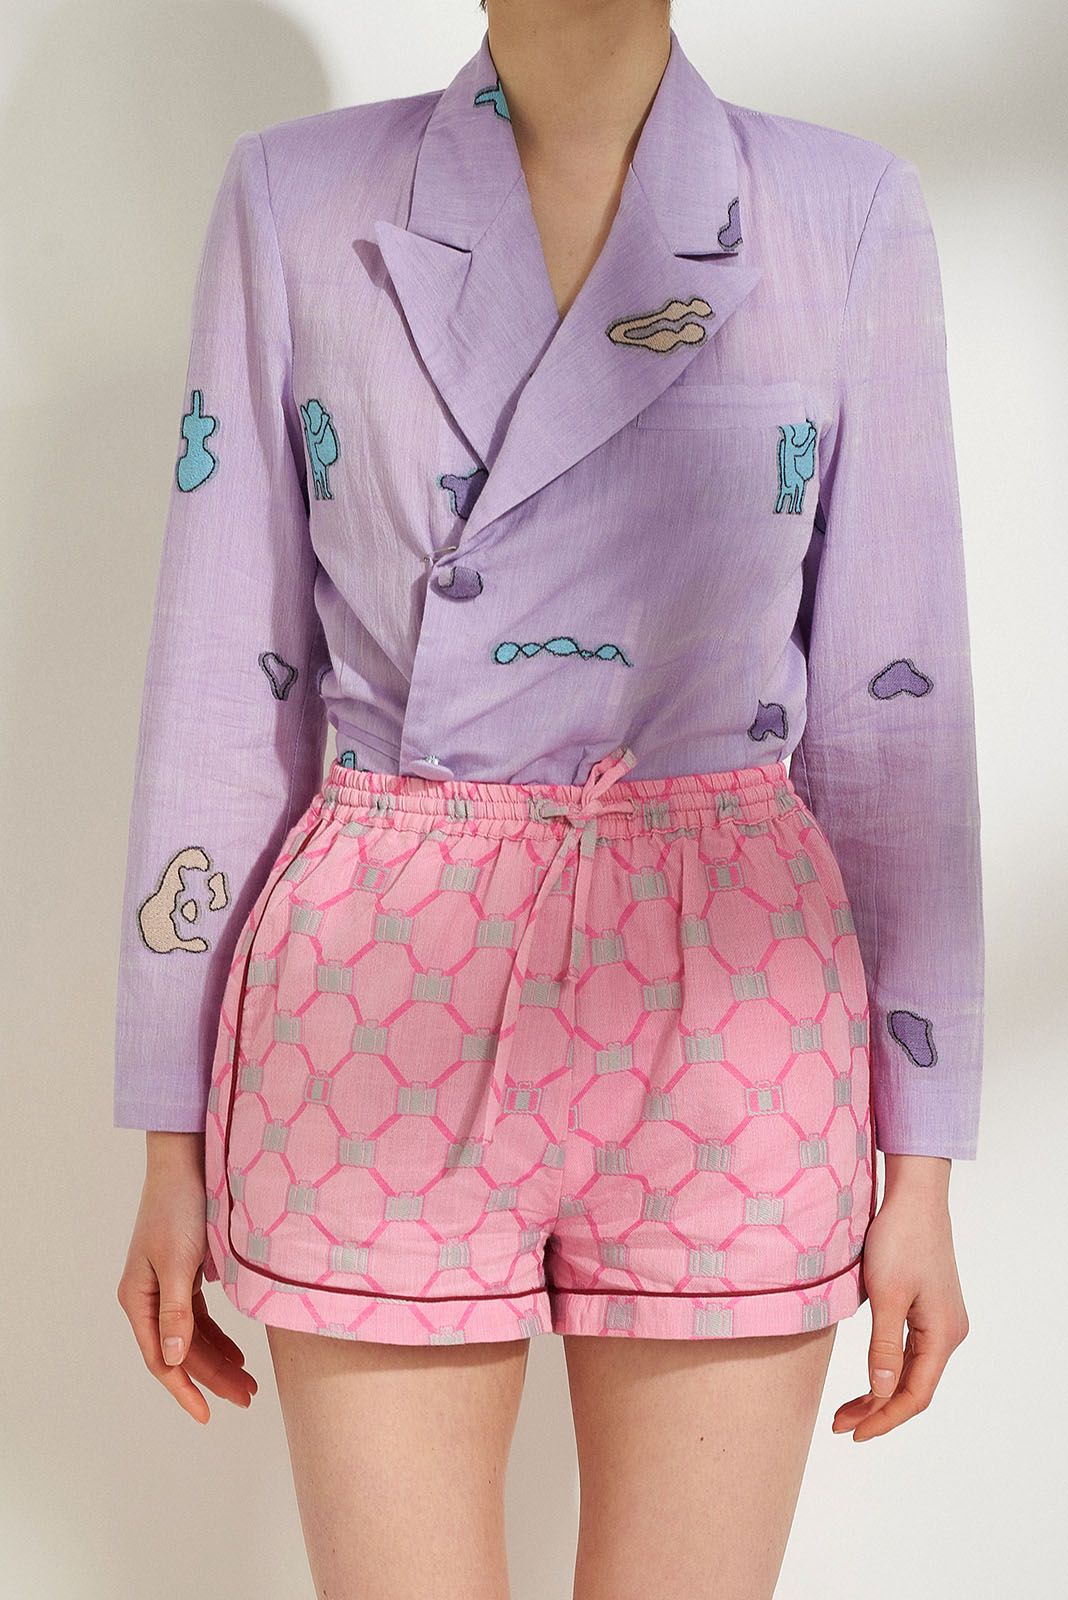 lefki athleisure shorts with matching lila harta pattern